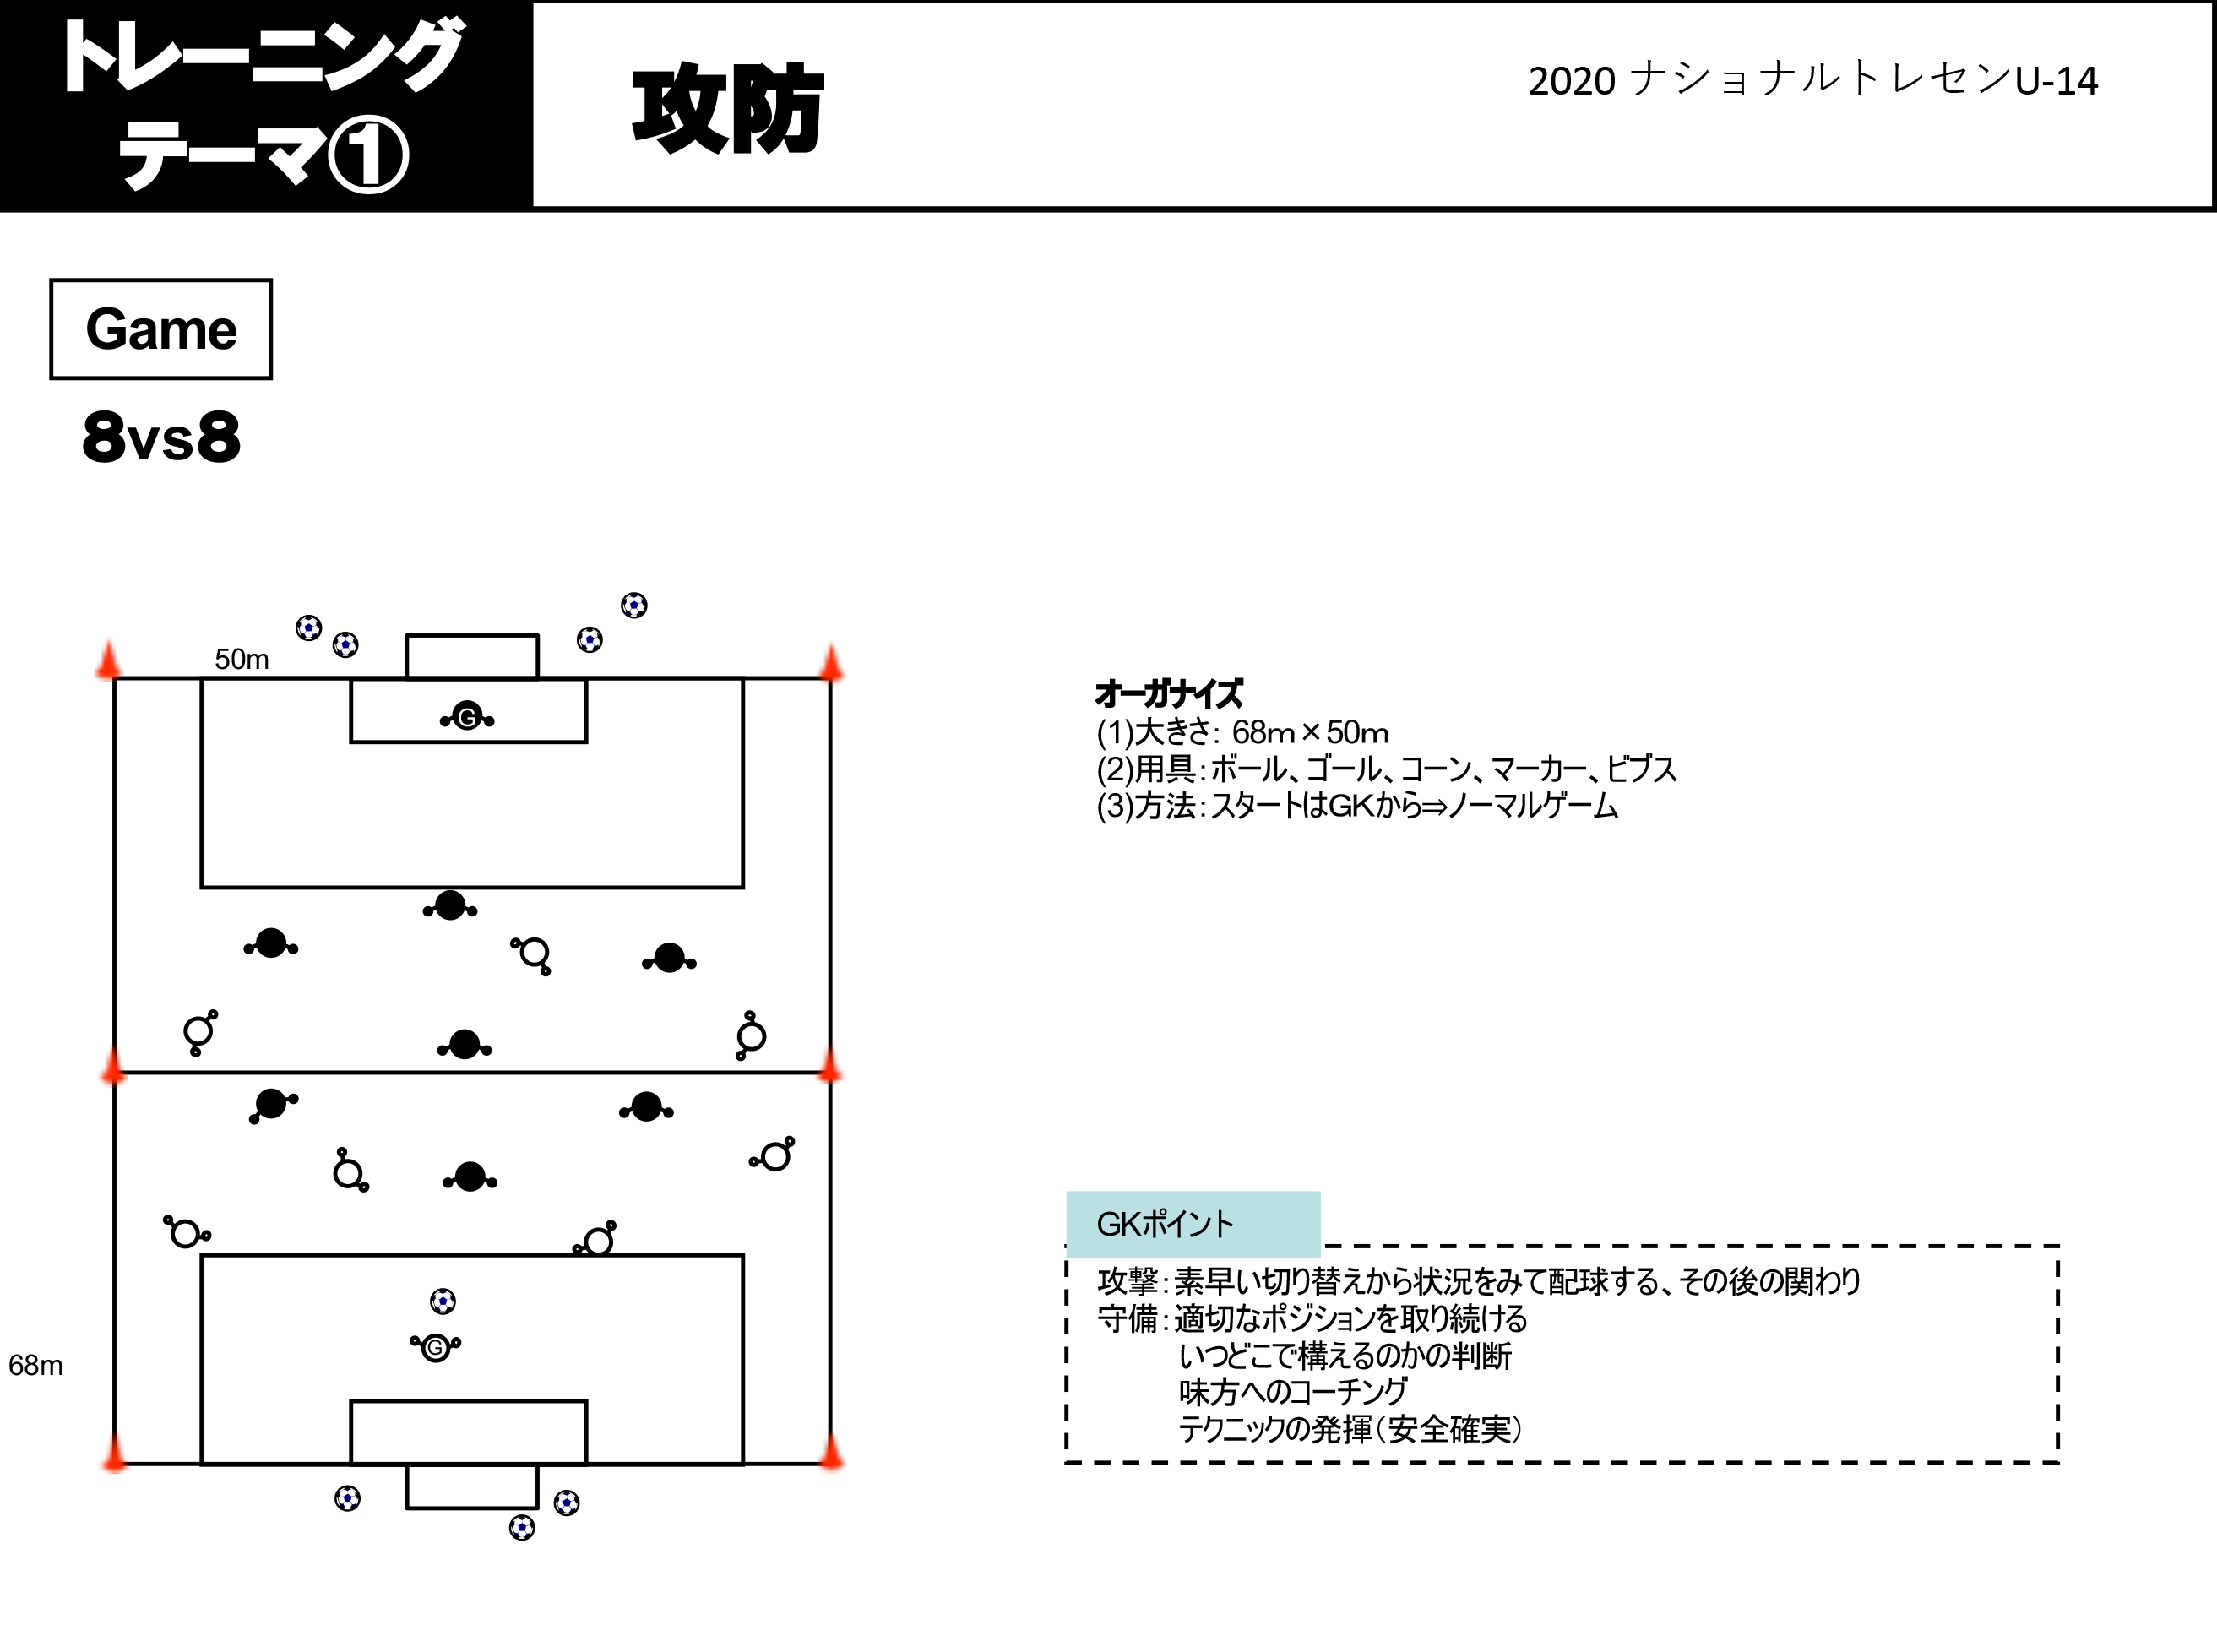 トレーニングメニュー ナショナルトレセンu 14 選手育成 Jfa 日本サッカー協会